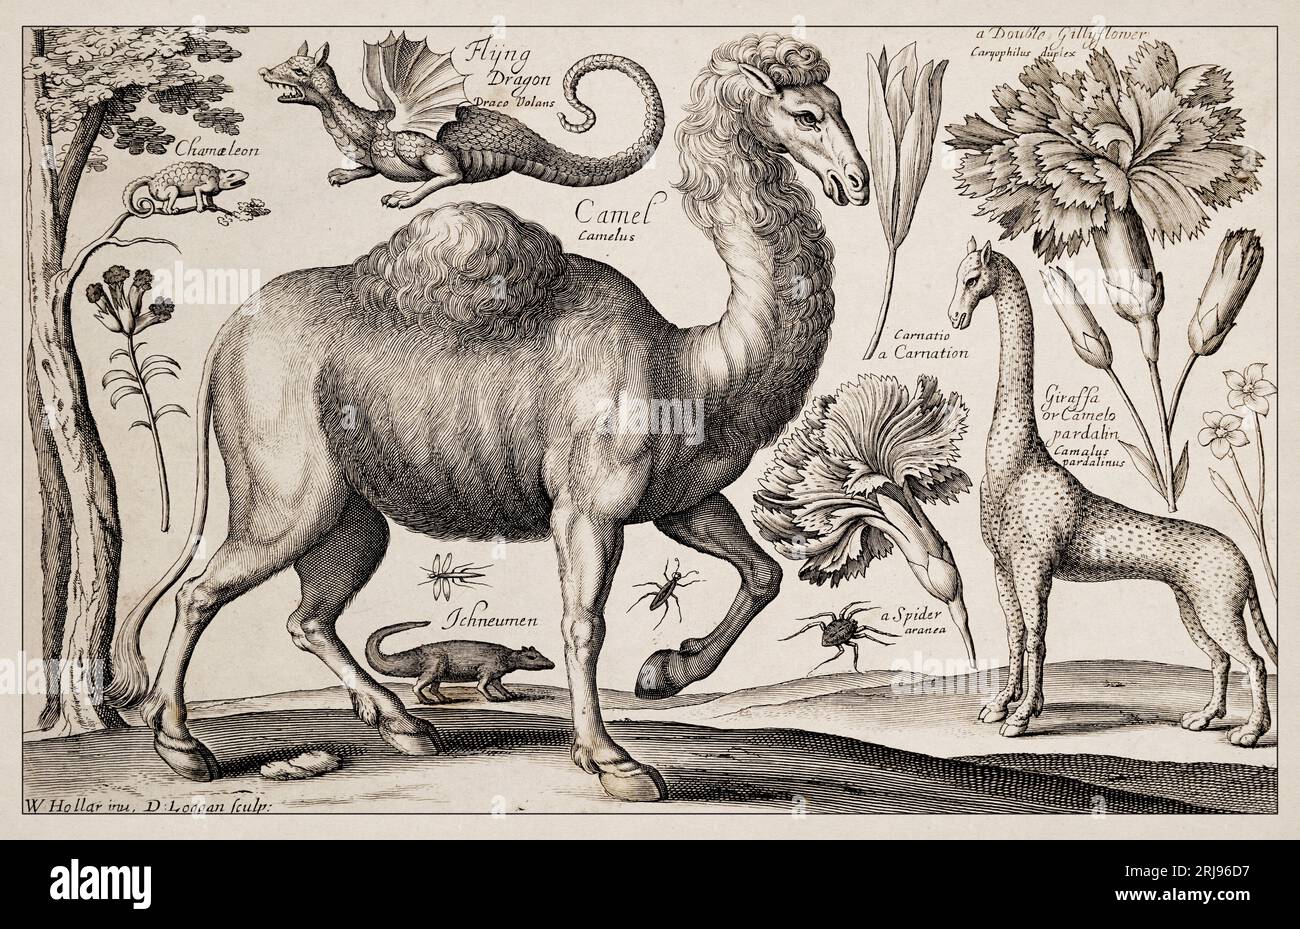 1663 Etching von Wenceslaus Hollar. Exquisite antike Darstellung zoologischer und botanischer Motive, detailliert vor Sepia-Hintergrund. Ziehen Stockfoto